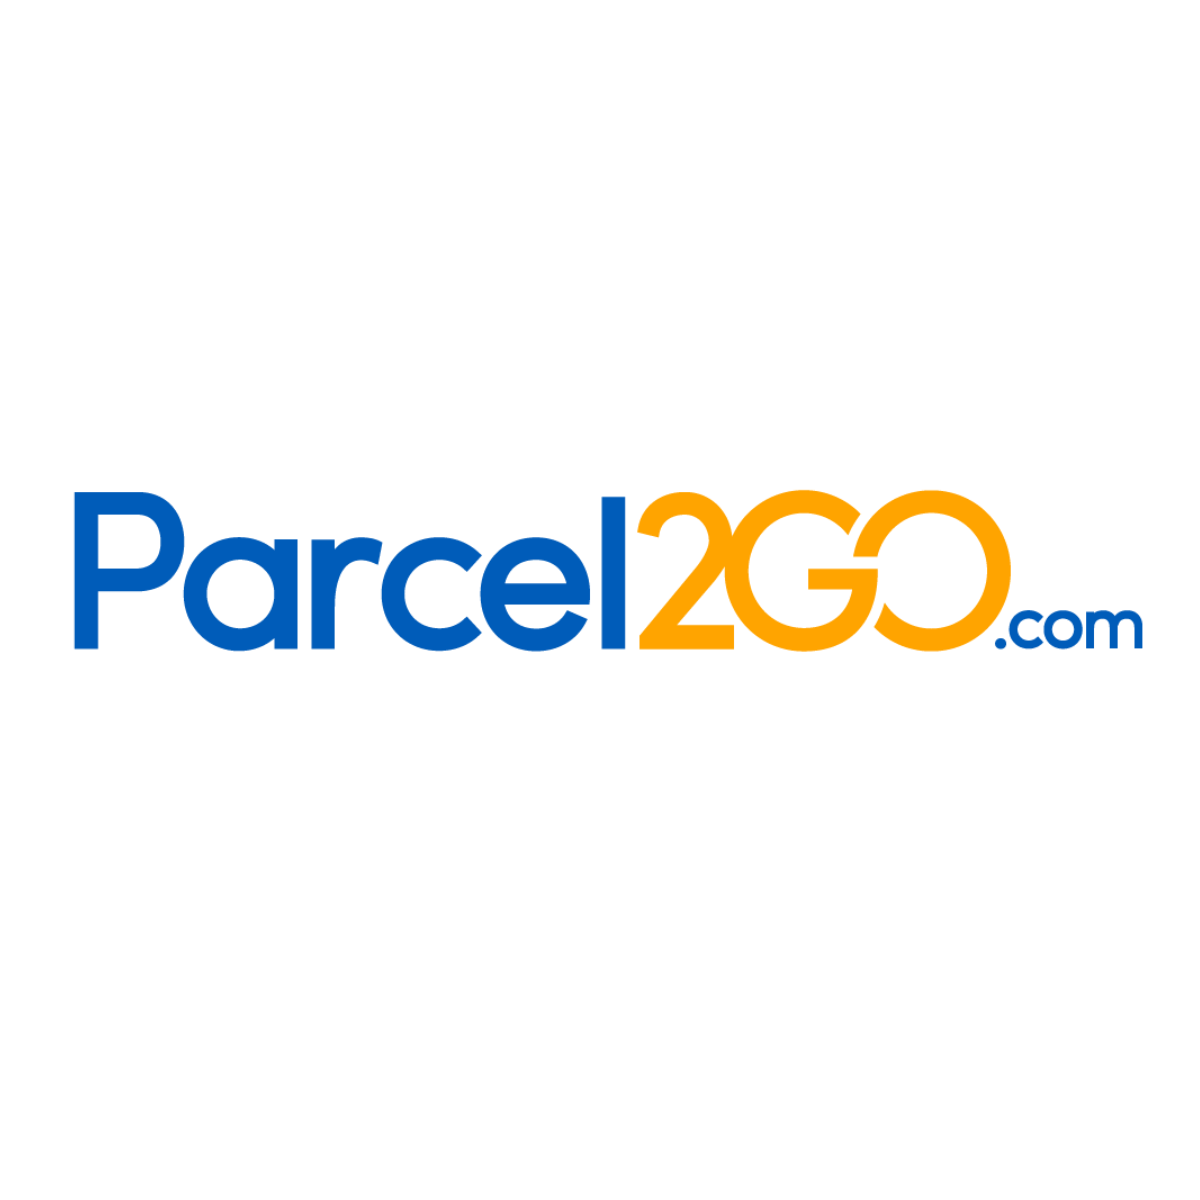 Parcel3go logo.png